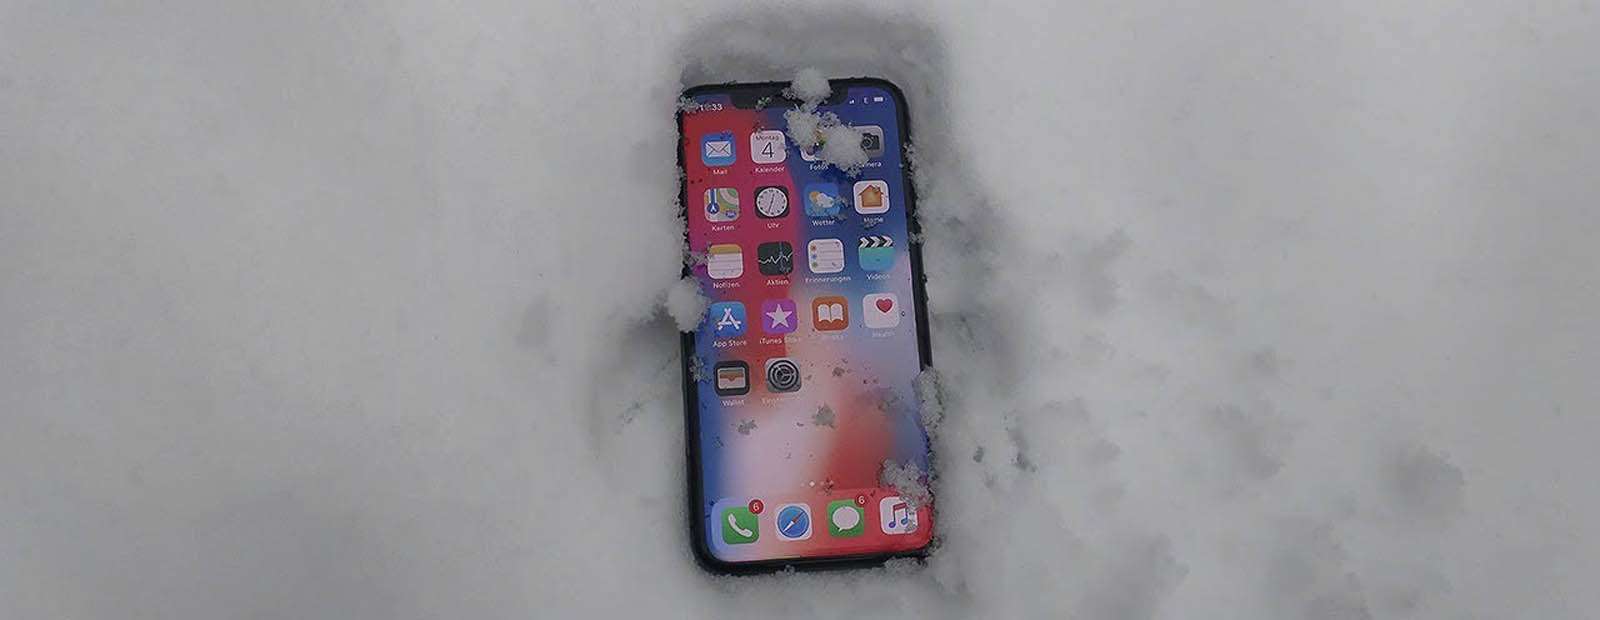 Почему iPhone выключается на холоде и как с этим бороться - Лайфхакер